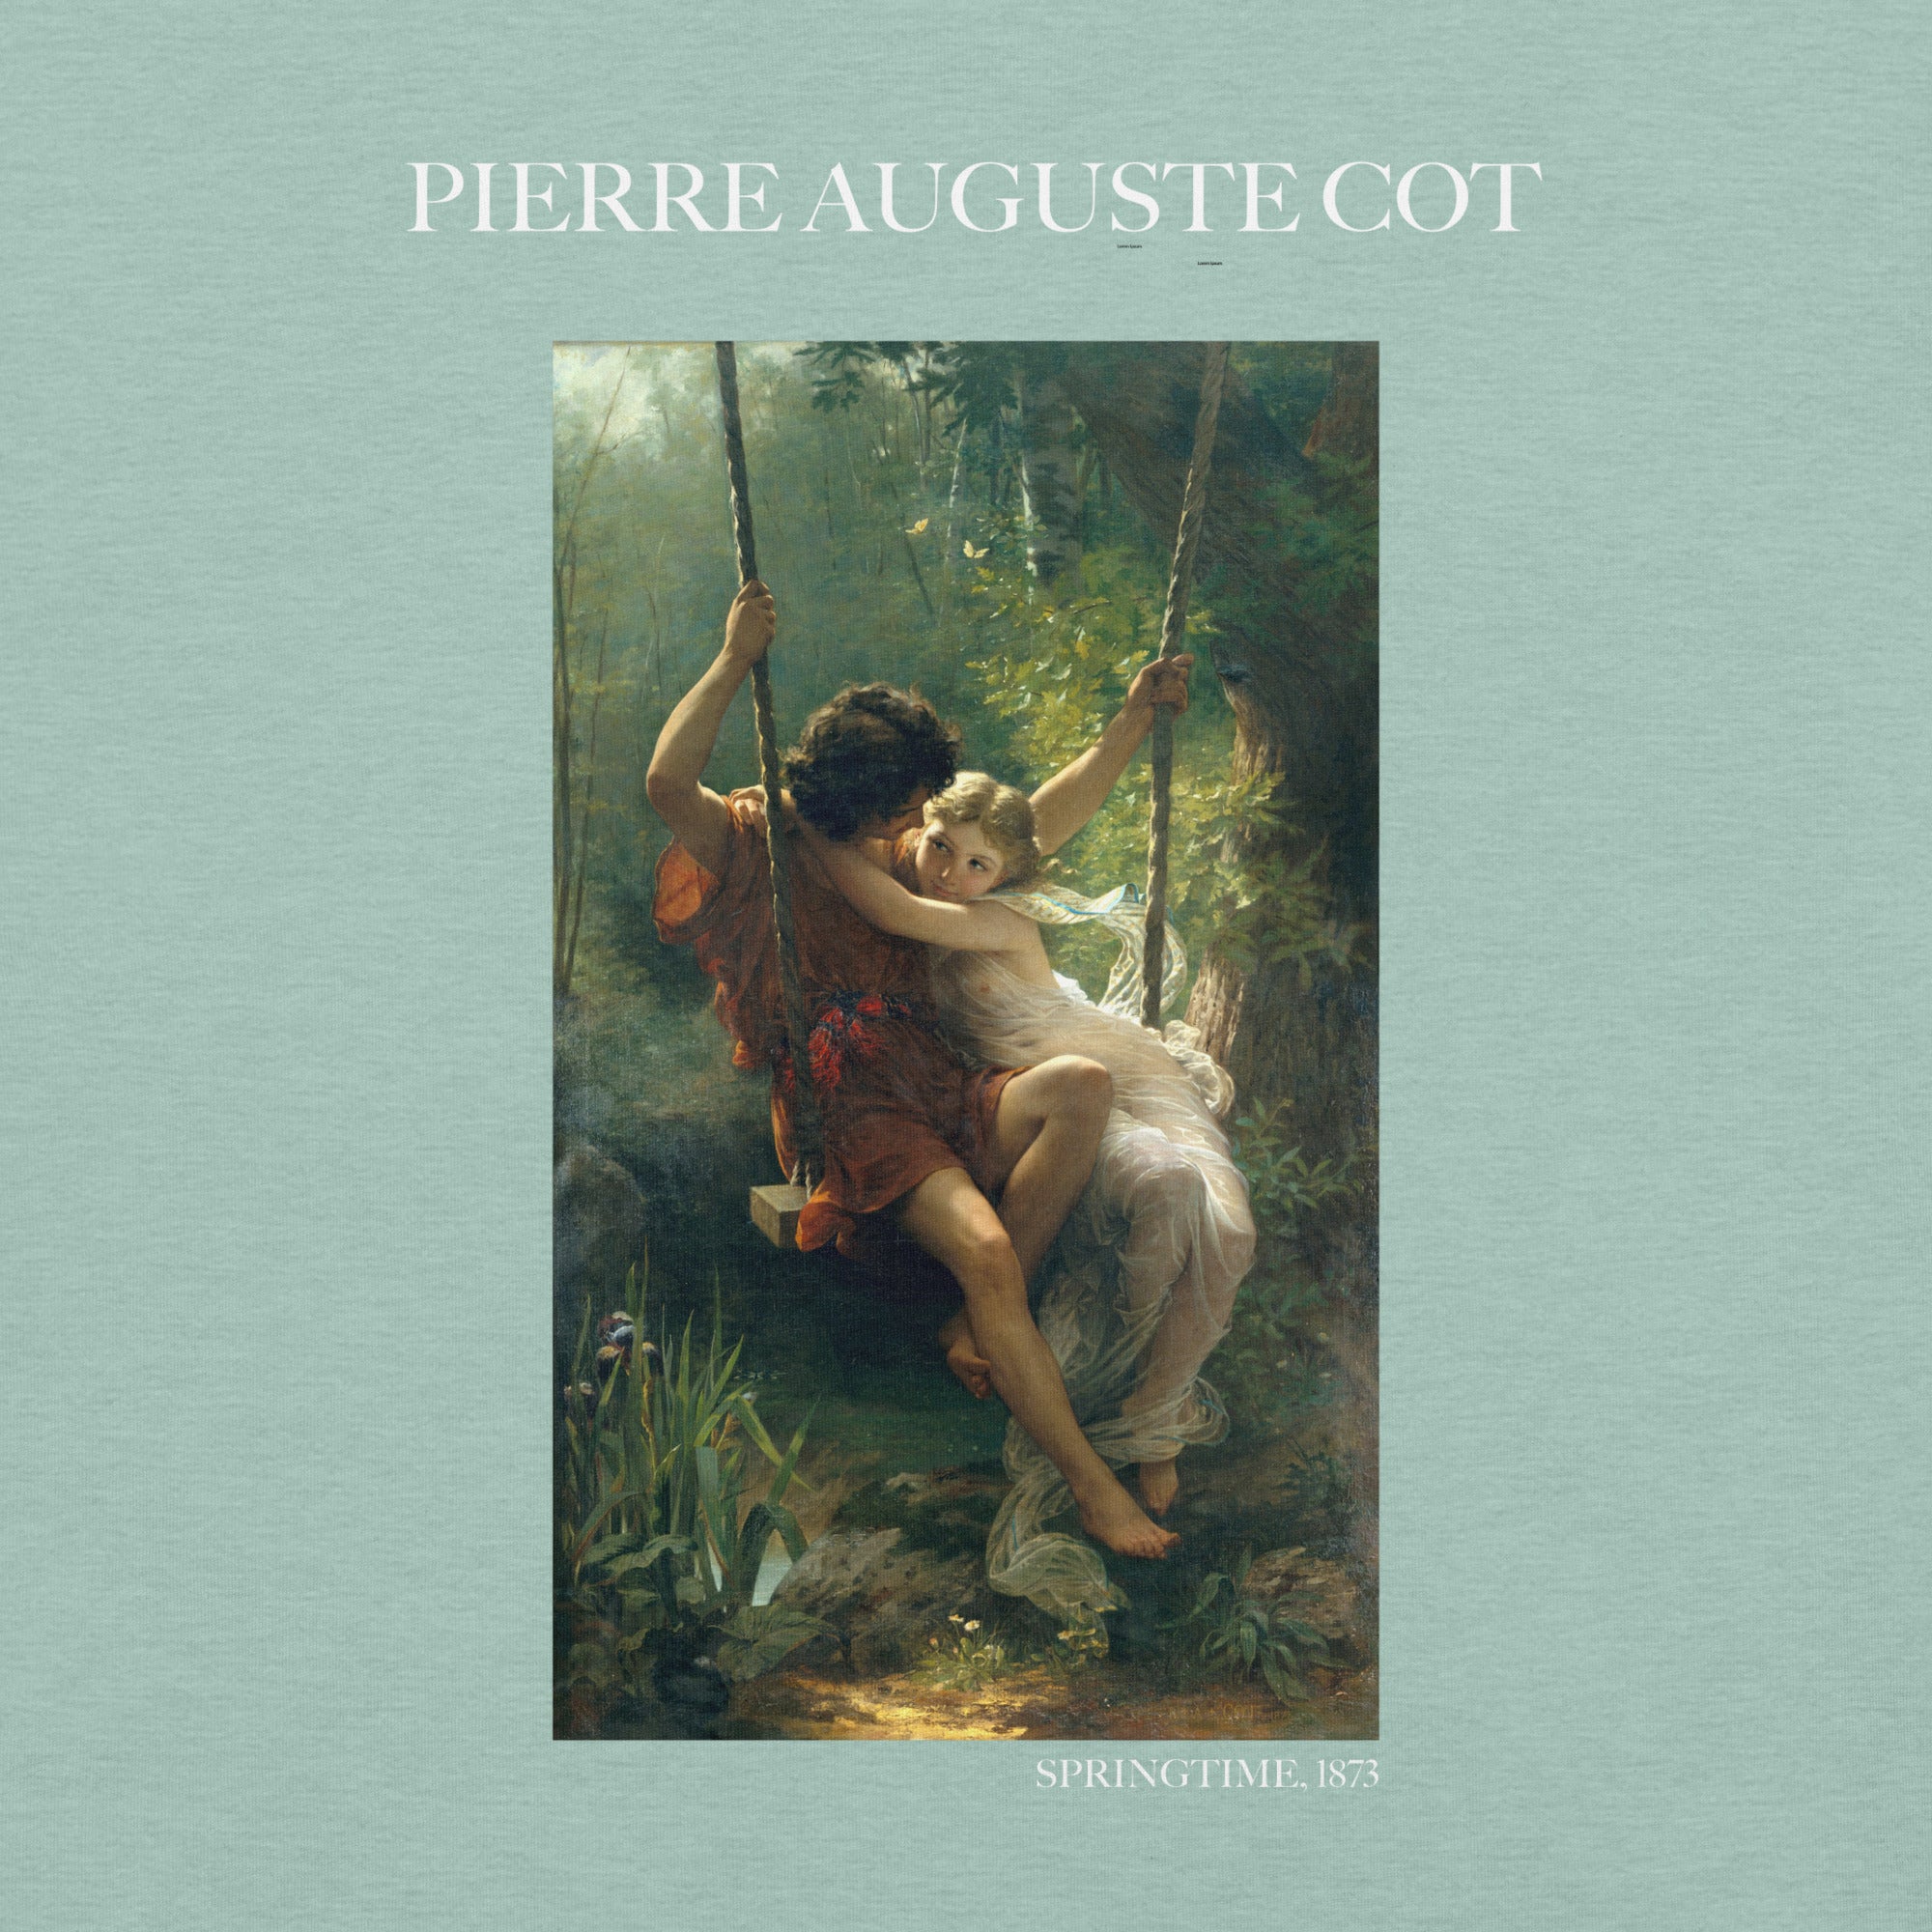 Pierre Auguste Cot 'Springtime' Famous Painting T-Shirt | Unisex Classic Art Tee